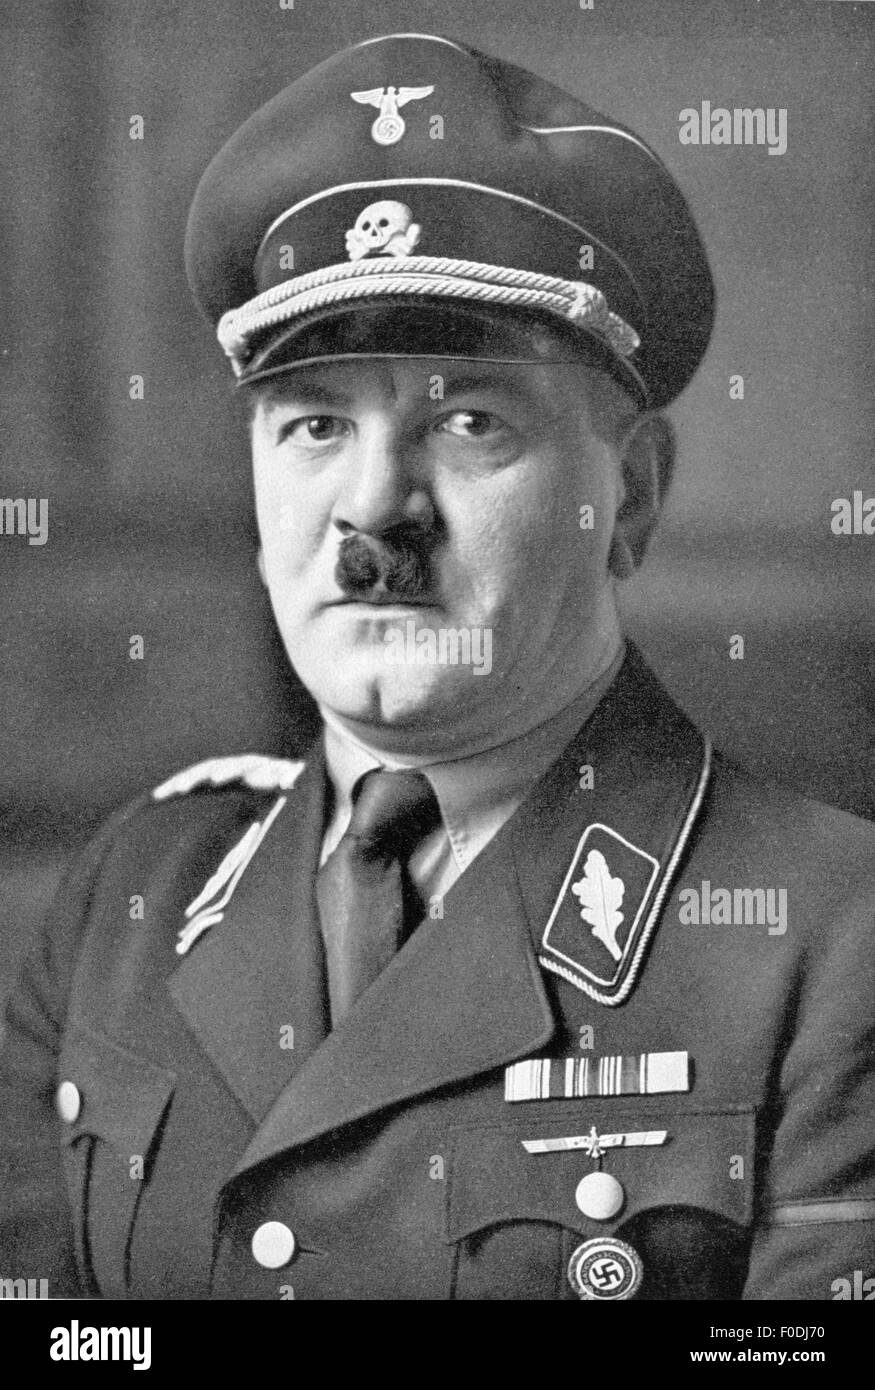 Schreck, Julius, 13.7.1898 - 16.5.1936, German chauffeur and bodyguard of Adolf Hitler, portrait, circa 1935, Stock Photo